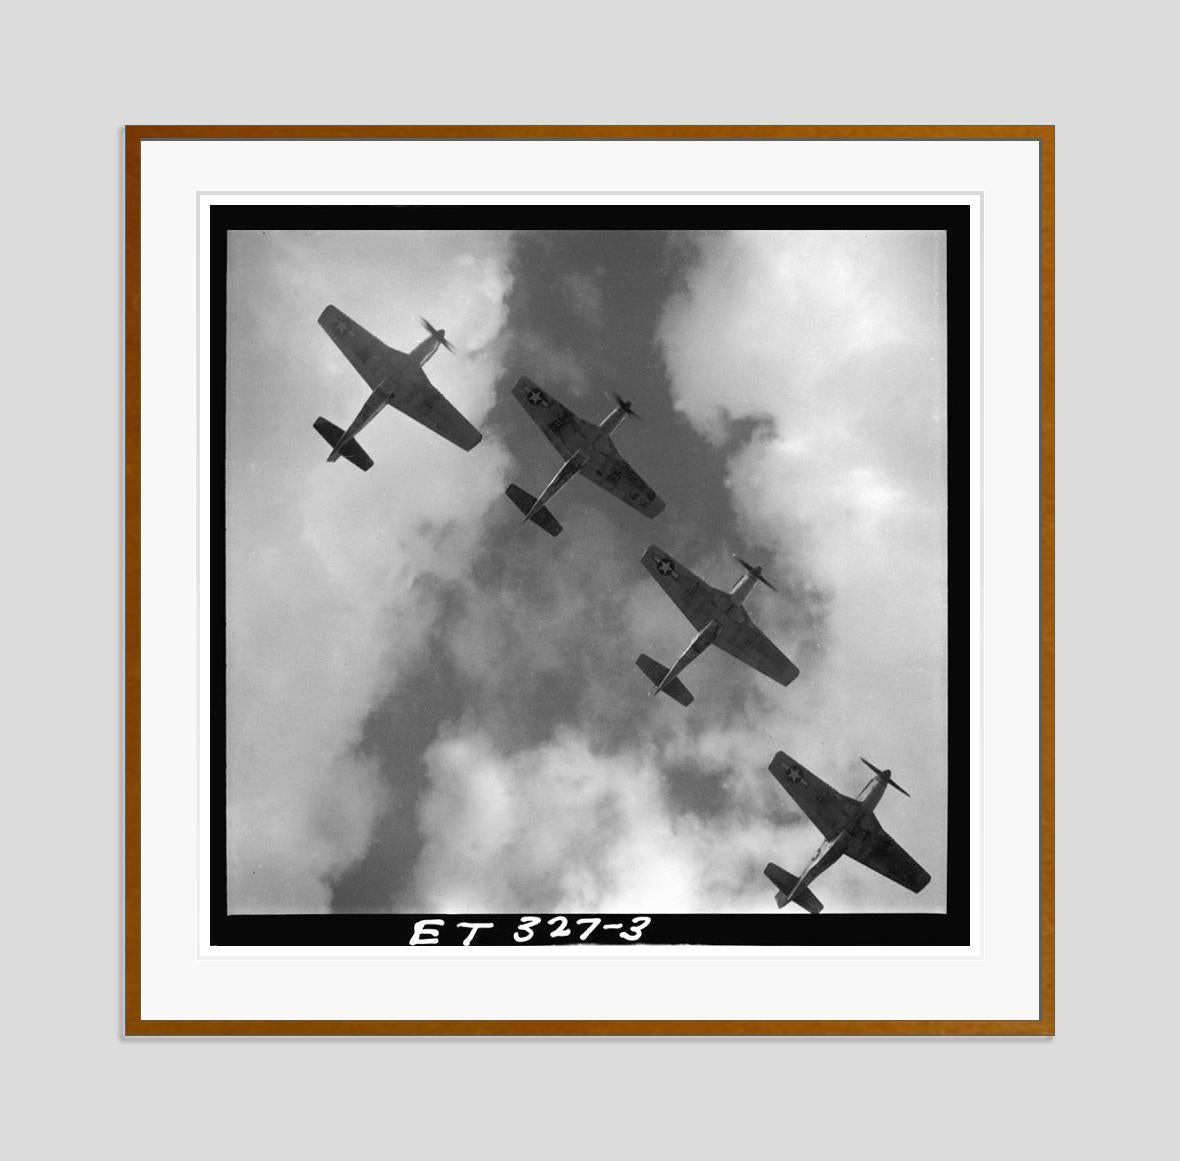 Mustangs In Flight 1945, édition limitée estampillée et signée  - Photograph de Toni Frissell